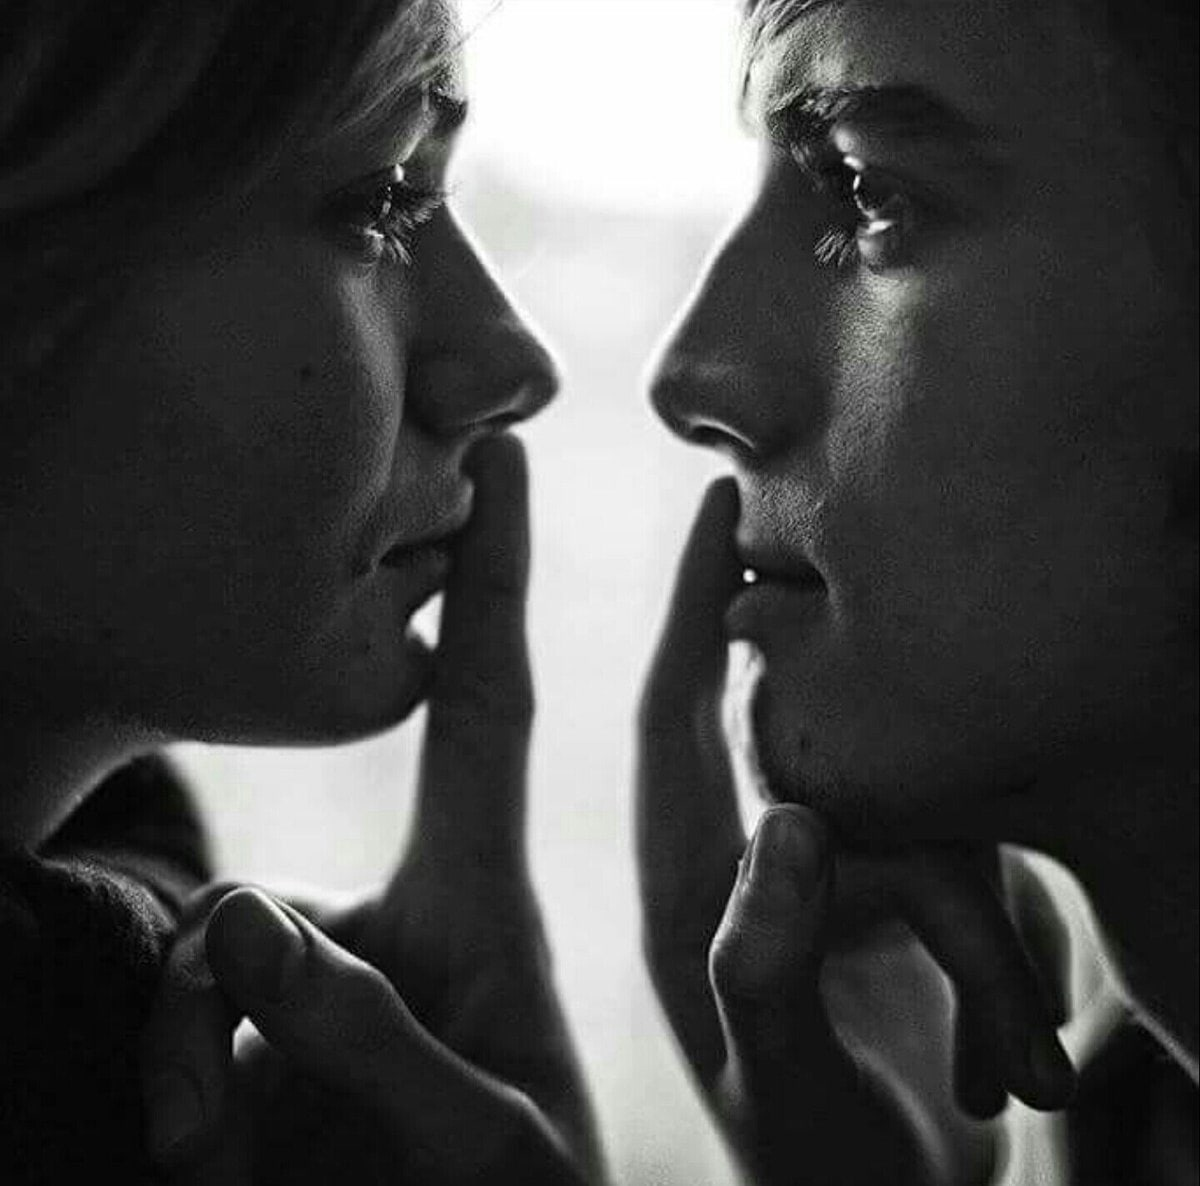 Долго смотрим друг другу в глаза. Молчаливая любовь. Влюбленные взгляды. Двое молчание. Мужчина и женщина глаза в глаза.